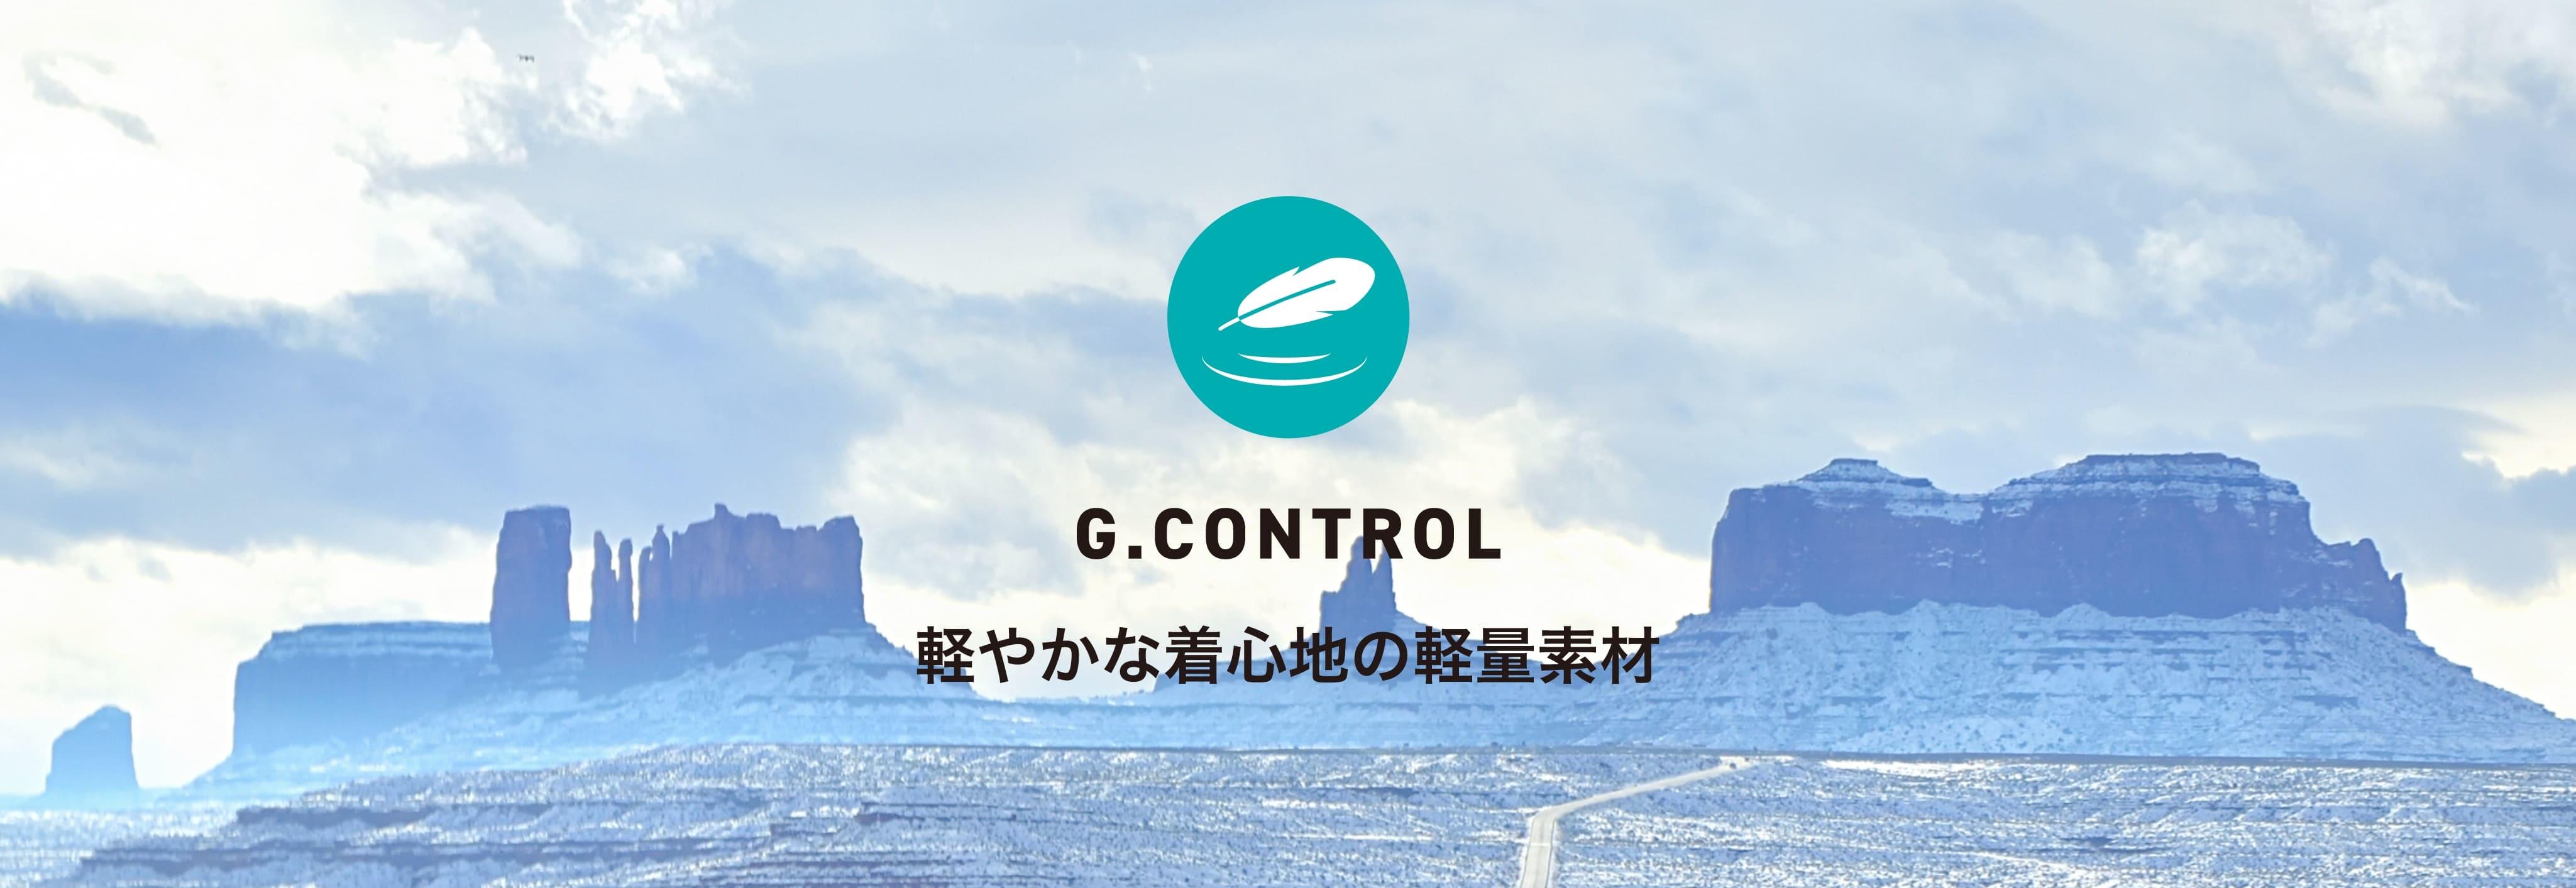 G.CONTROL軽やかな着心地の軽量素材!